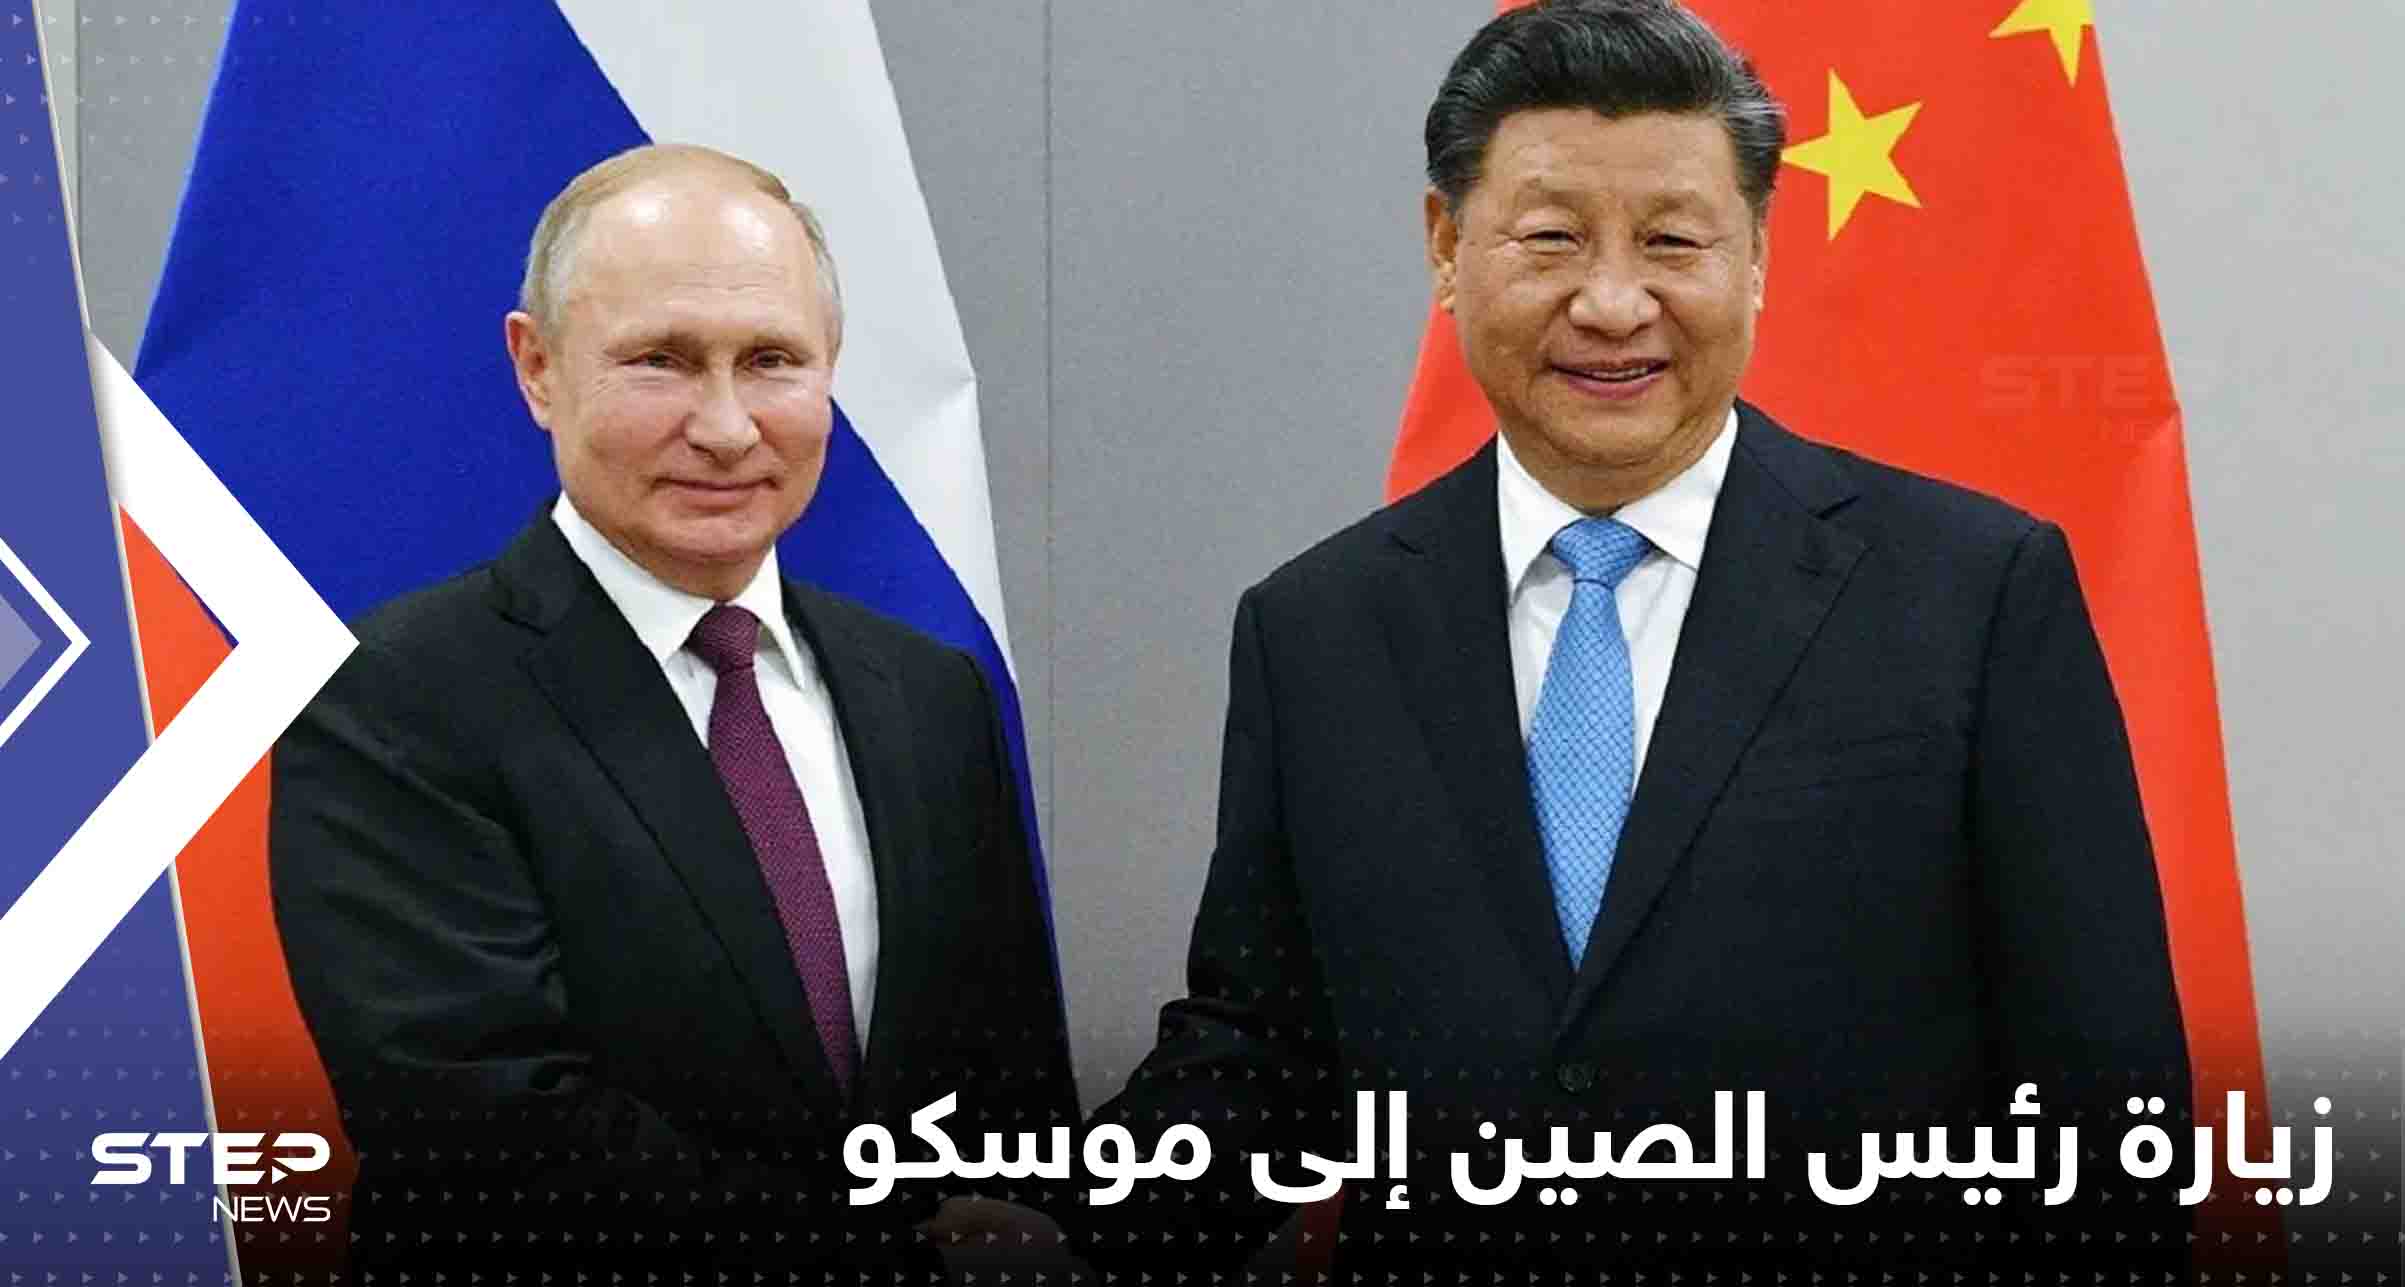 زيارة رئيس الصين إلى موسكو